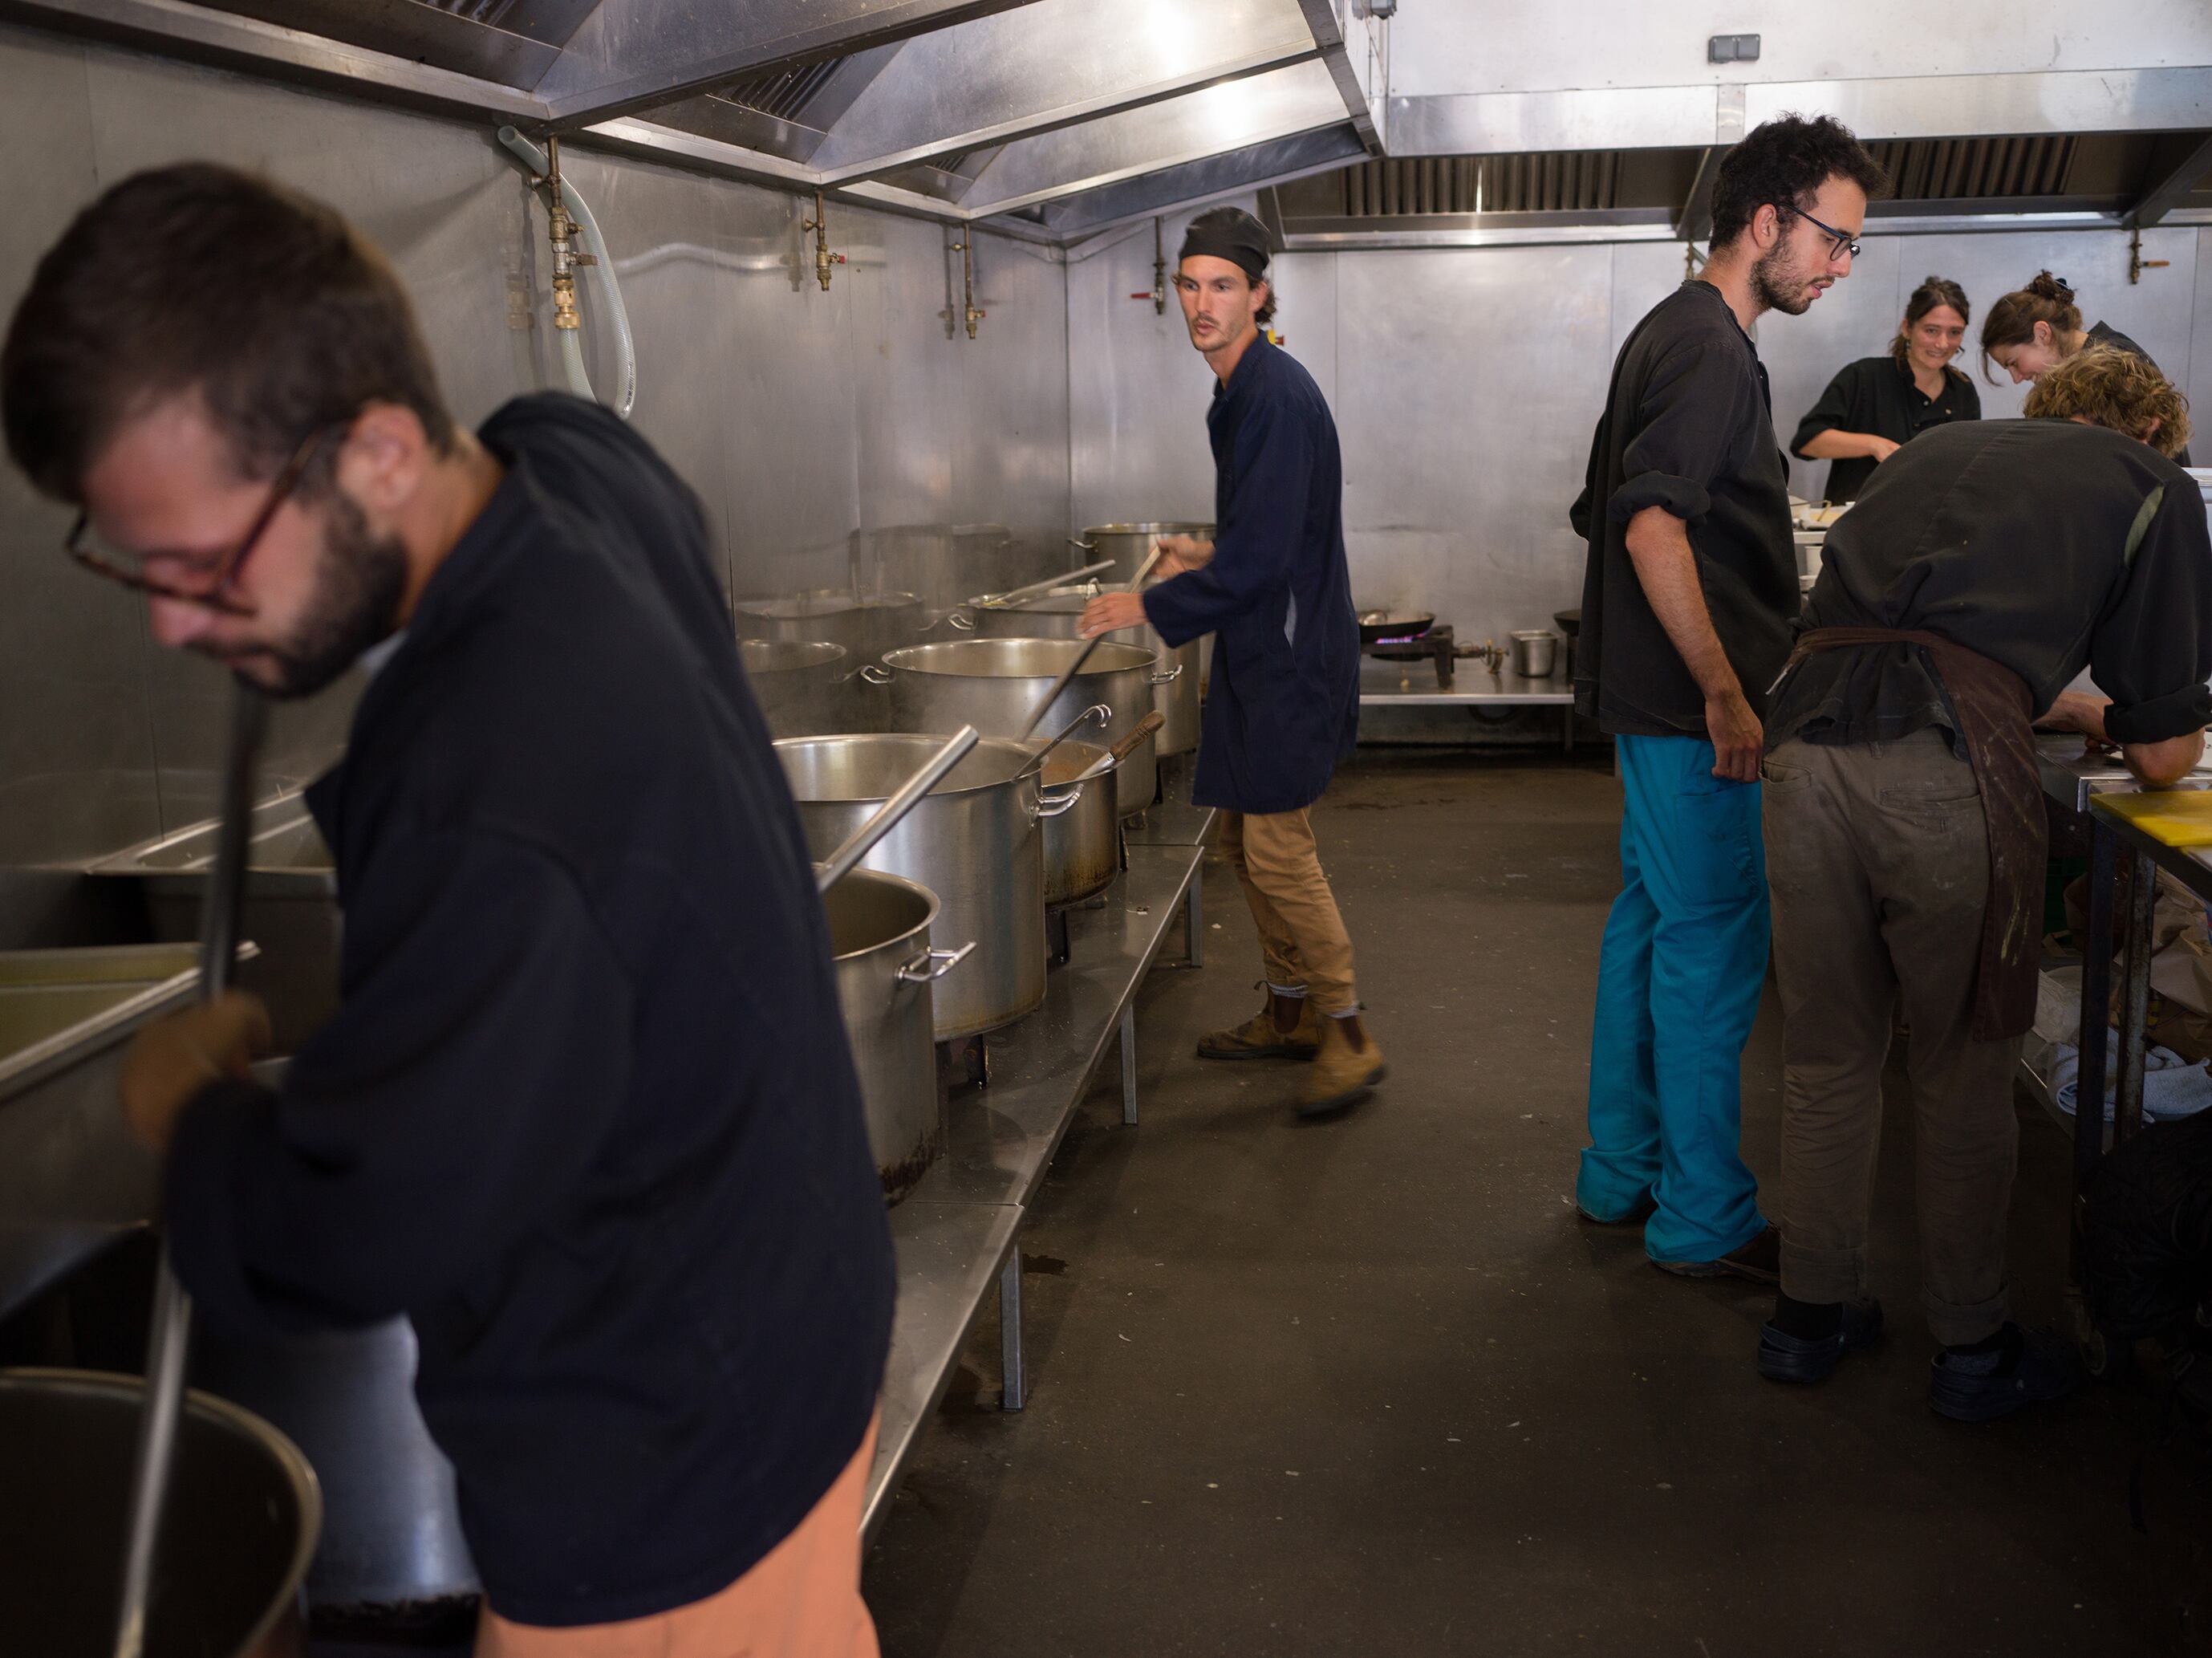 Voluntarios de diferentes ONG trabajan en la cocina preparando comida para el reparto a los inmigrantes.